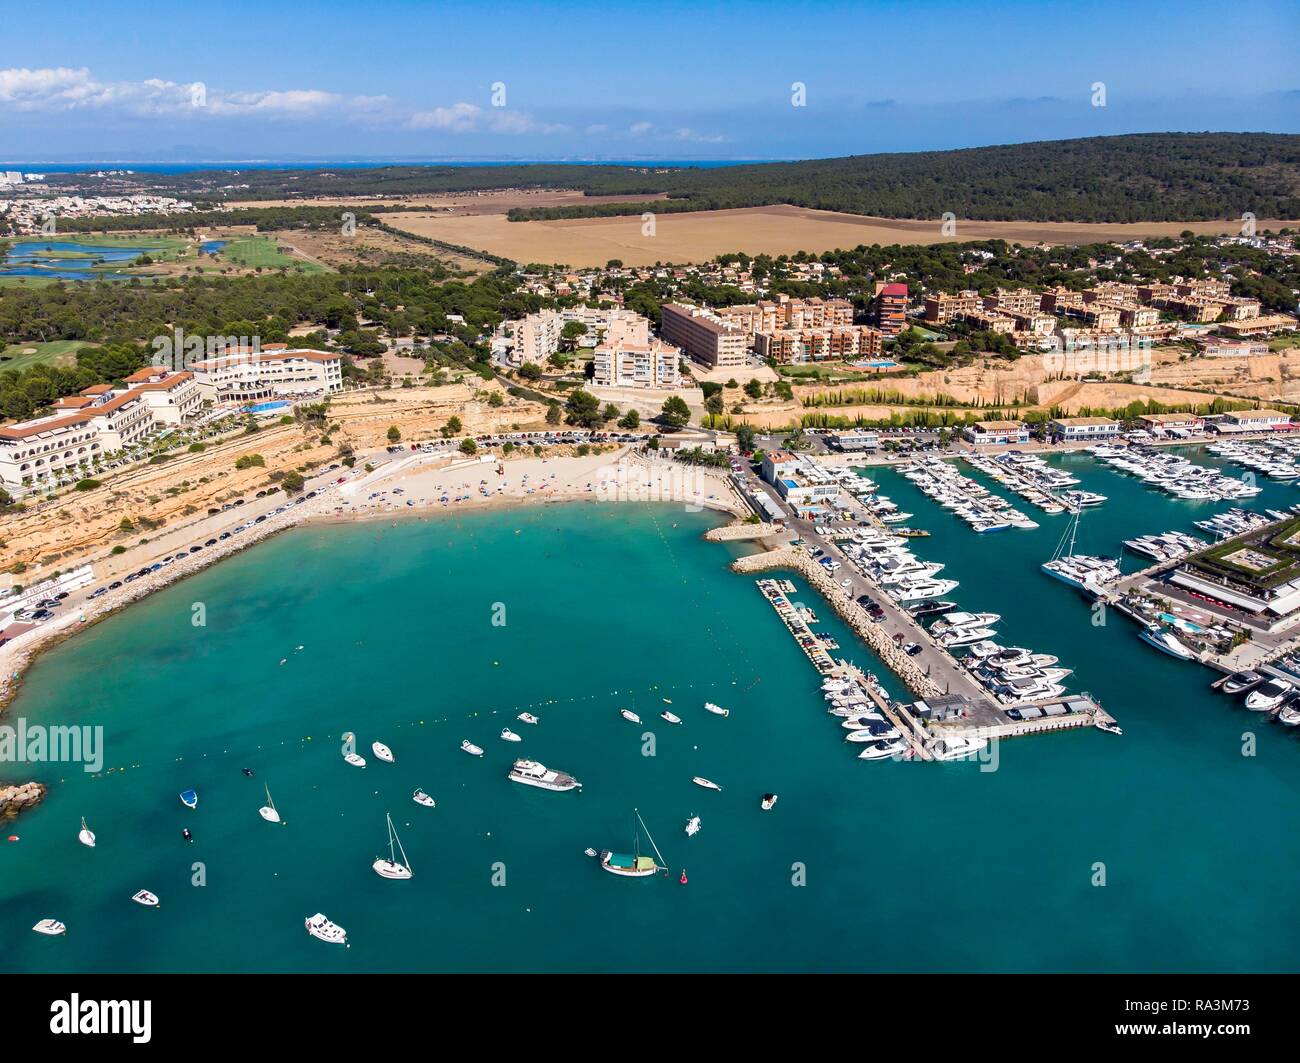 Vista aérea, Marina Port Adriano, El Toro, la región Santa Ponca, Mallorca, Islas Baleares, España Foto de stock